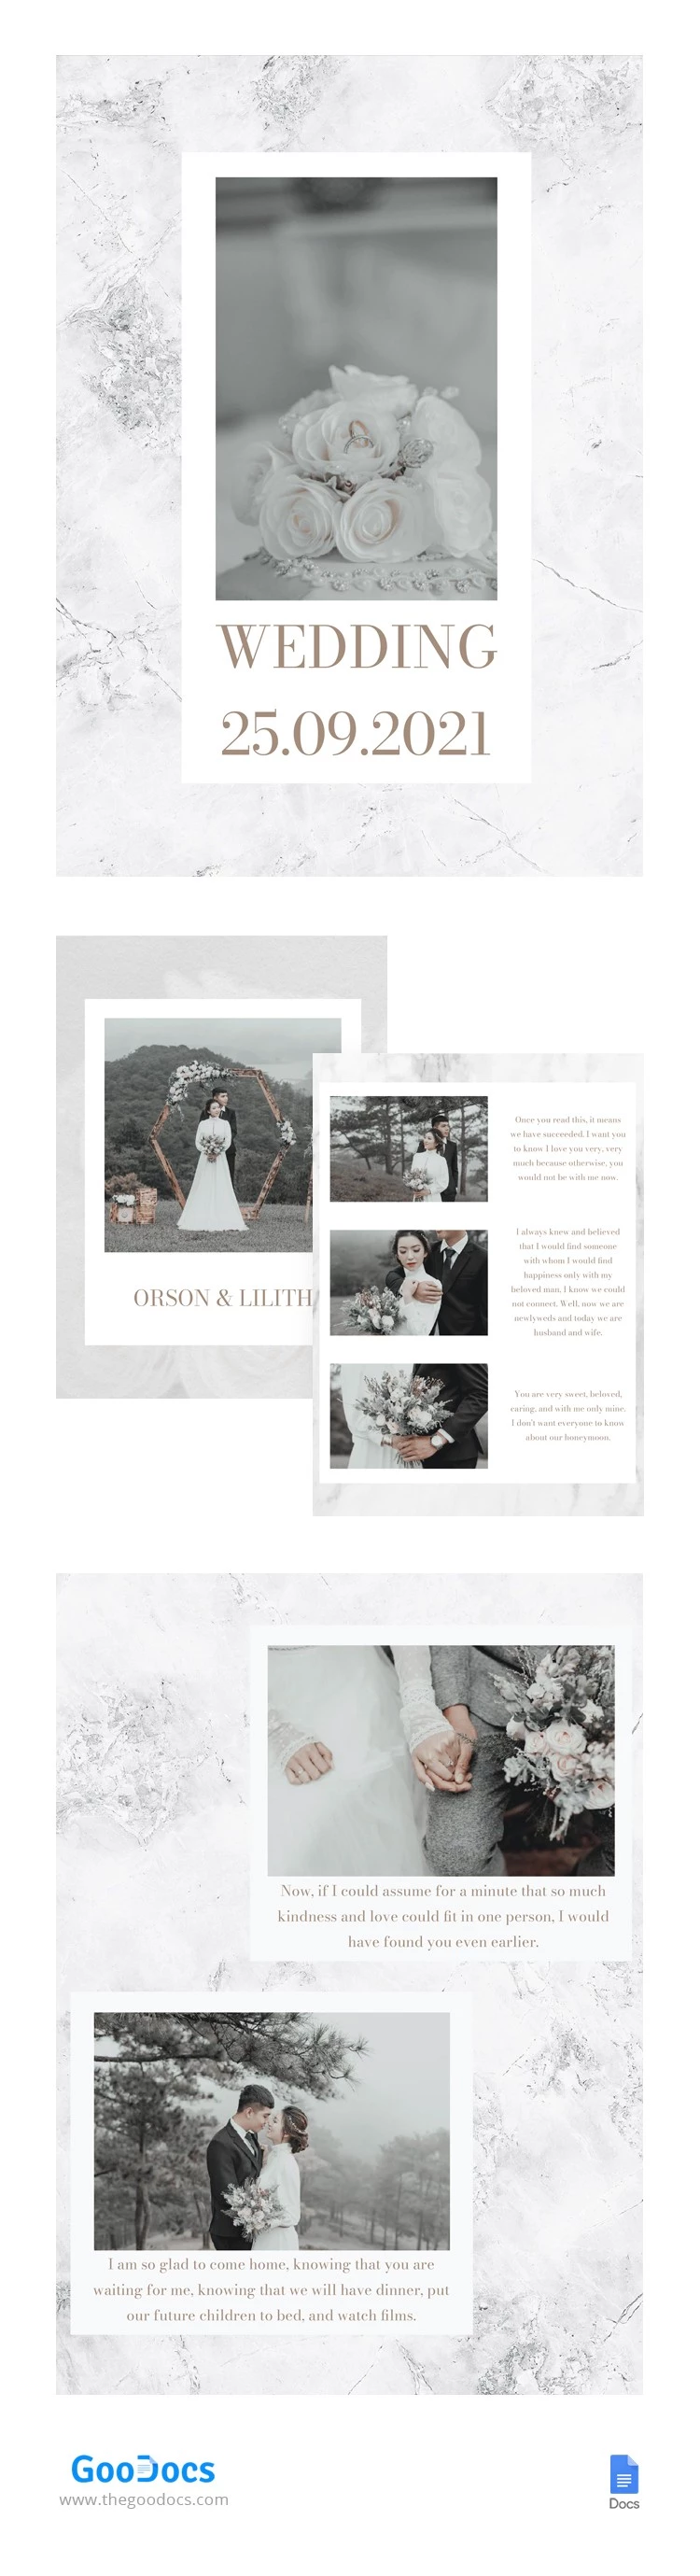 Álbum de fotos de casamento em mármore - free Google Docs Template - 10062828